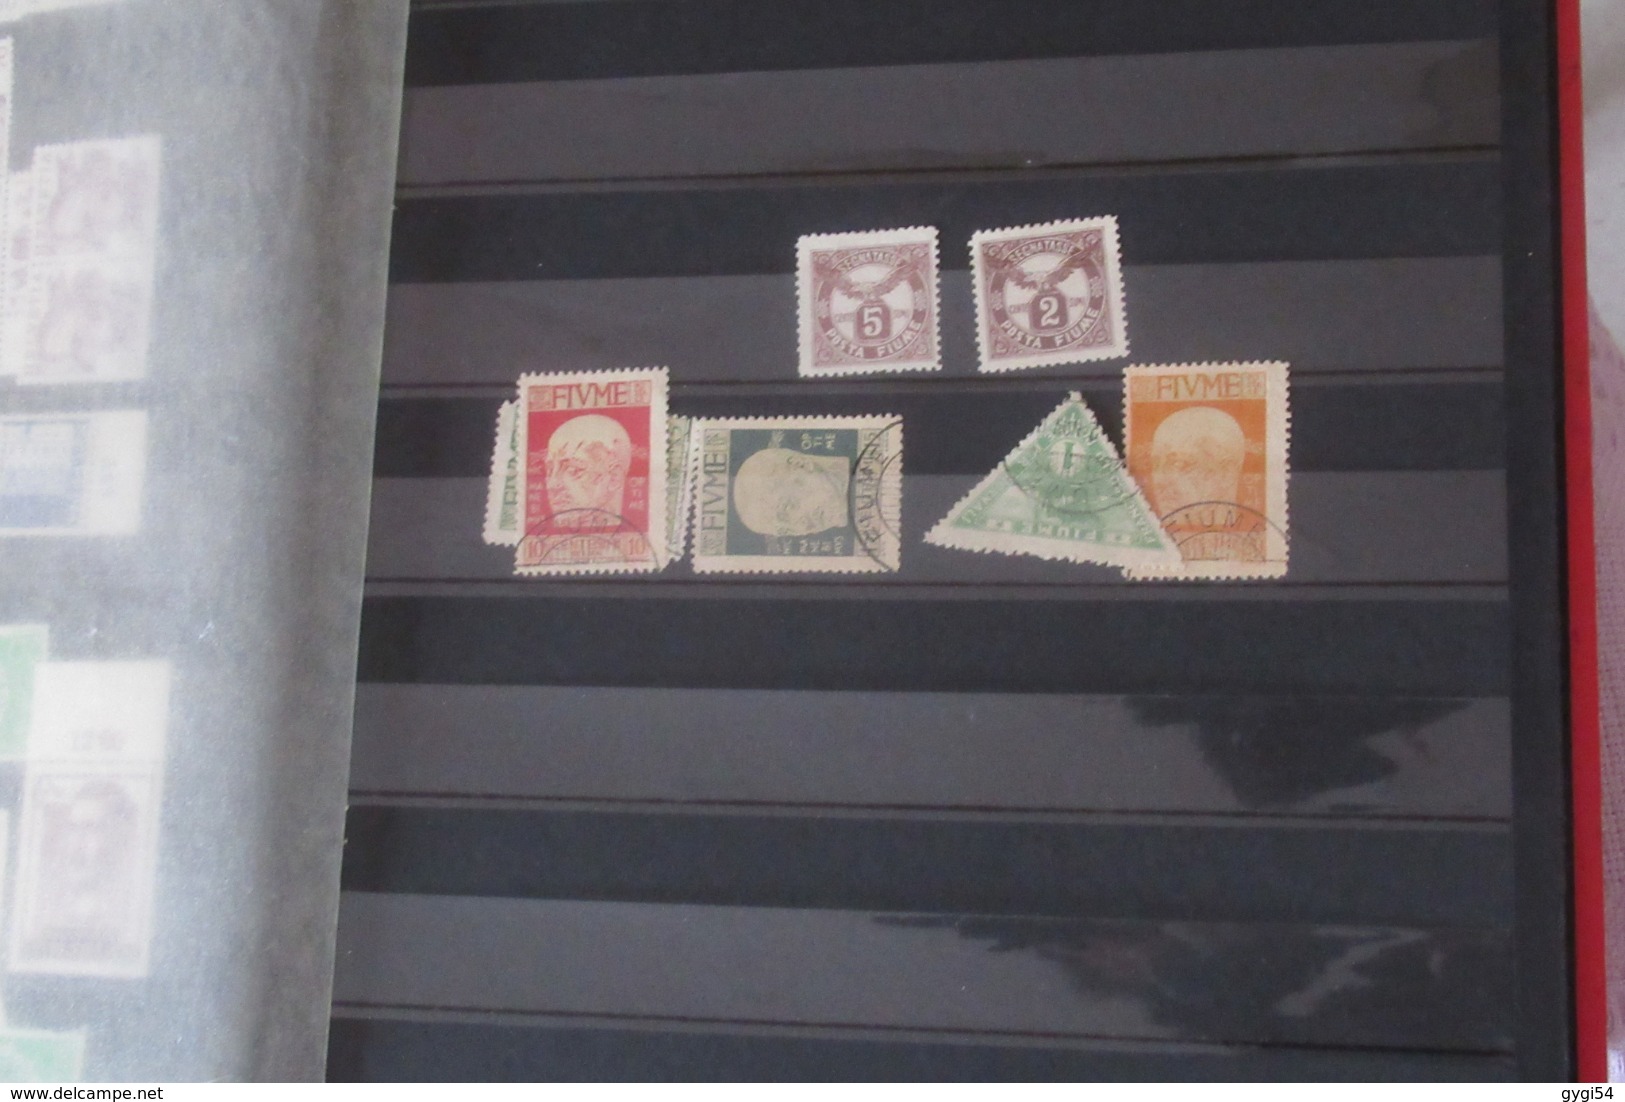 France 2 classeurs oblitérés dans l 1er neufs dans le second  timbres SUISSE  N** MNH  27 SCANS